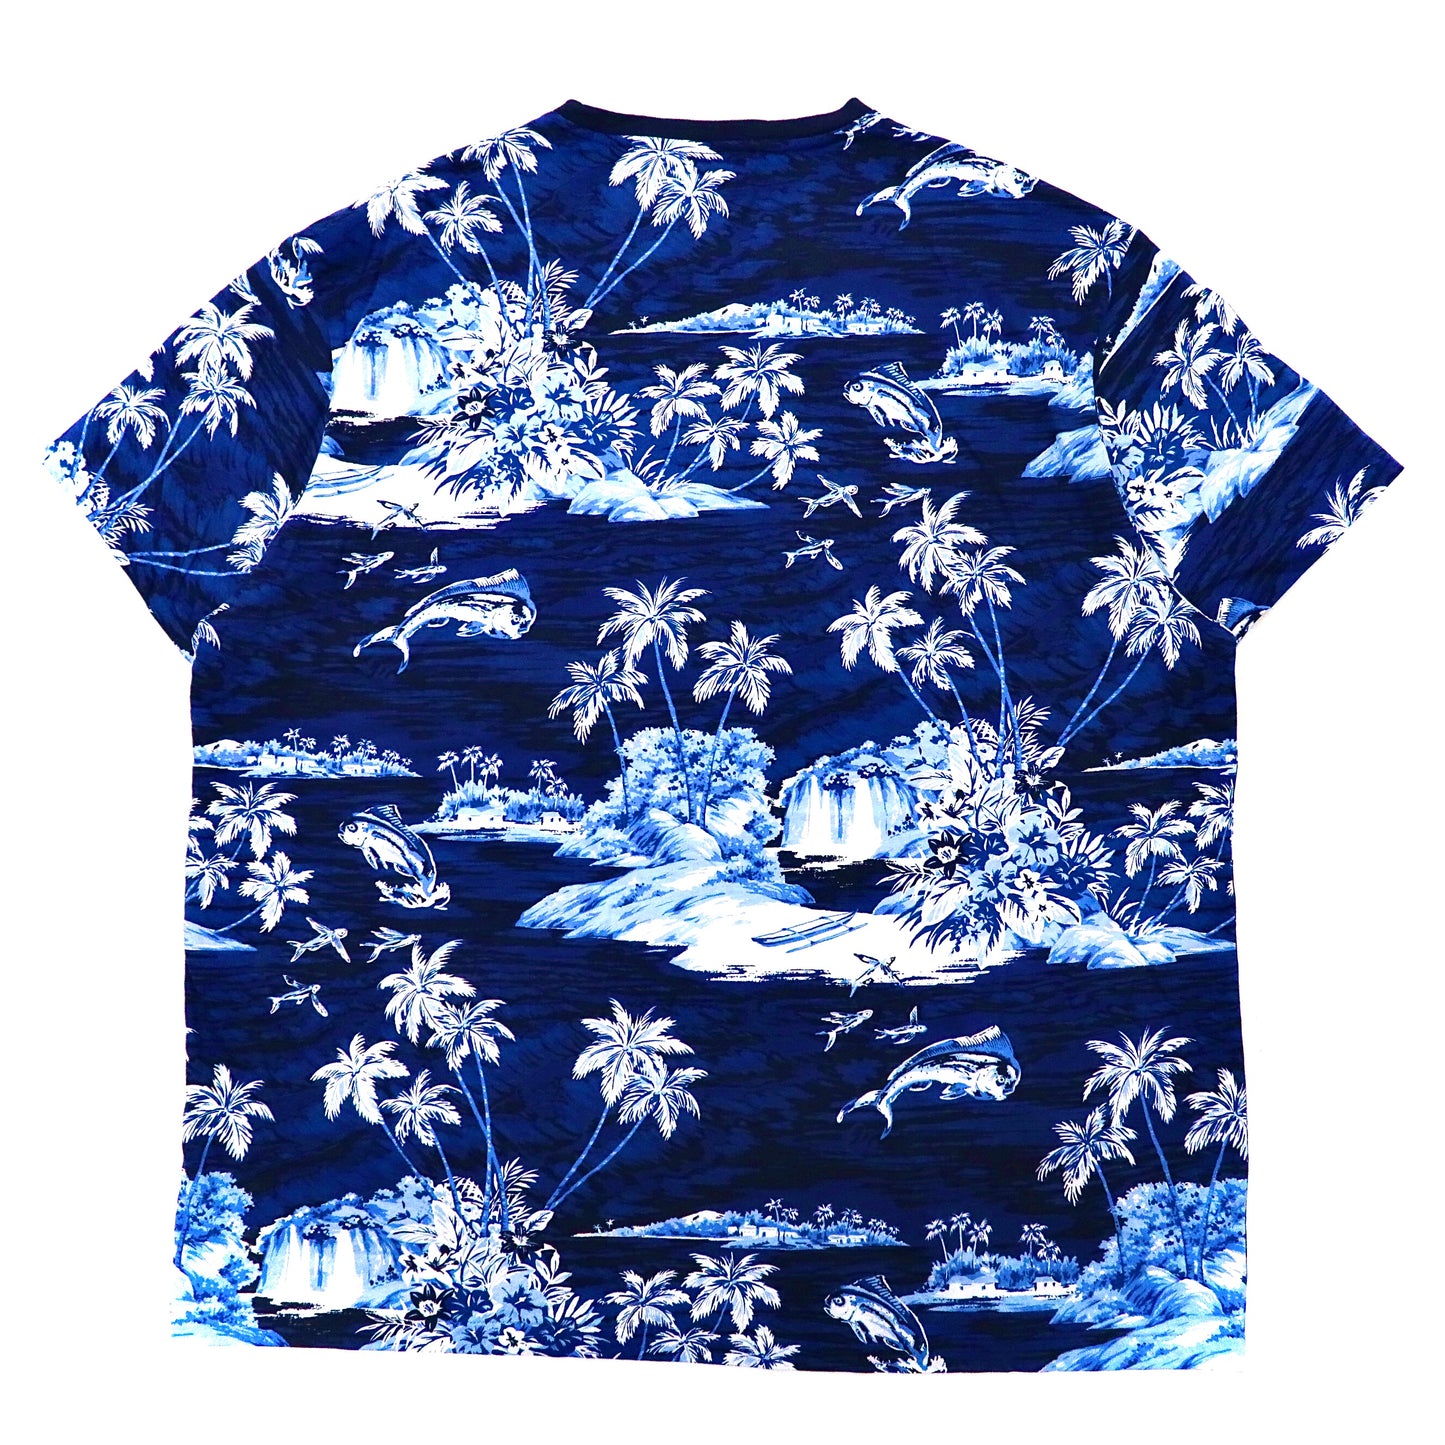 POLO RALPH LAUREN ビッグサイズ ポケットTシャツ XXL ネイビー コットン 総柄 ハワイアン スモールポニー刺繍